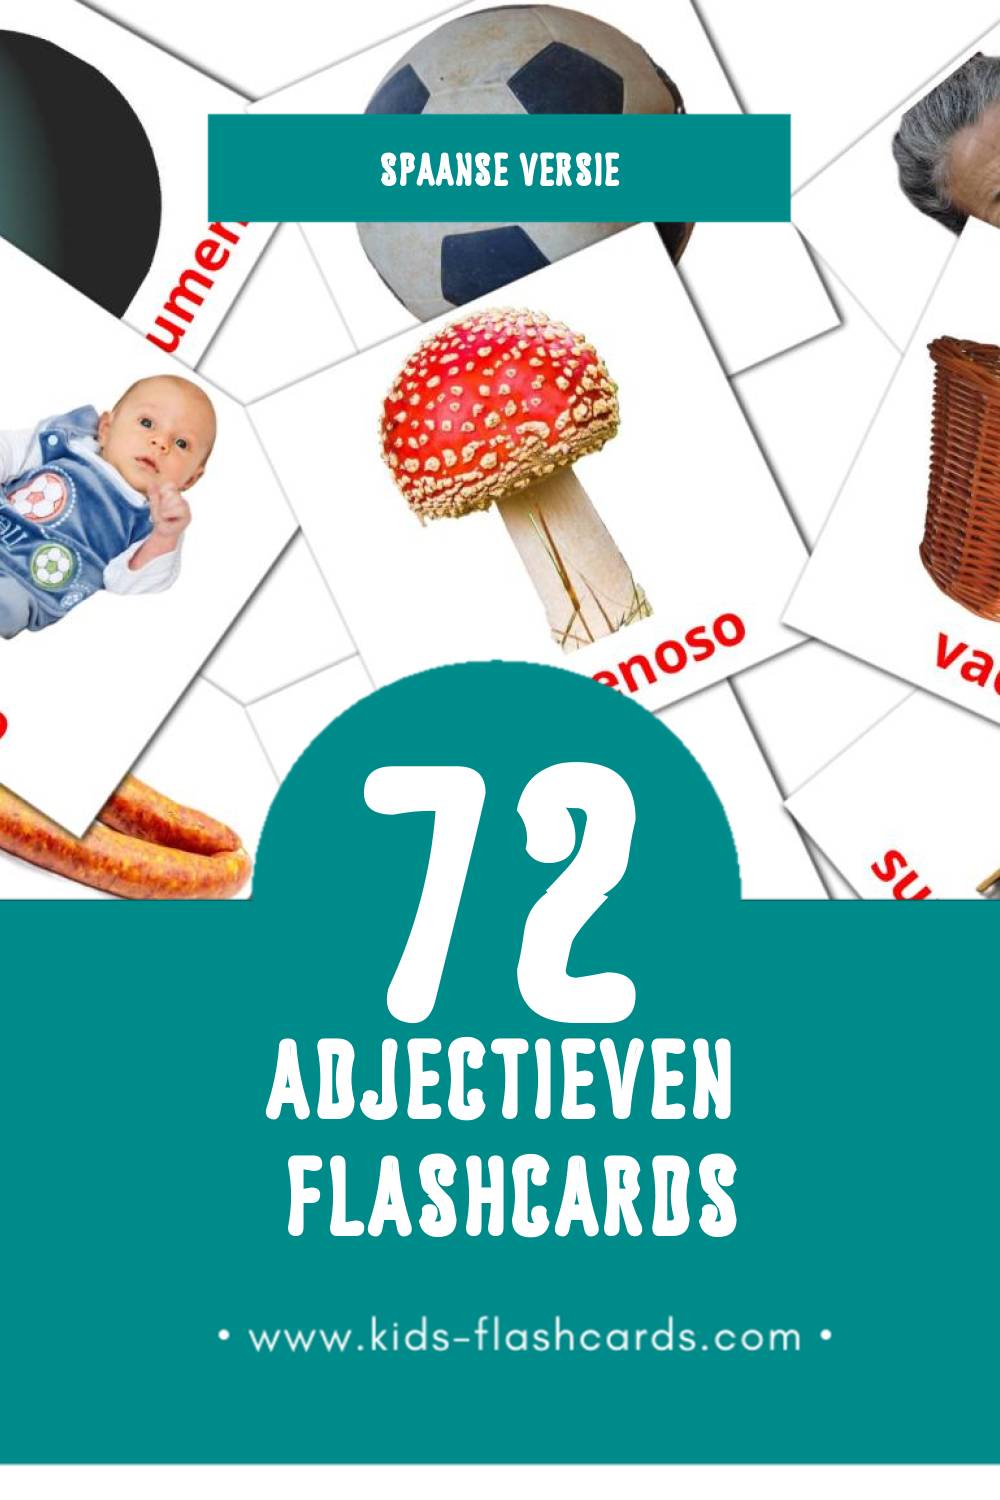 Visuele Adjetivos  Flashcards voor Kleuters (72 kaarten in het Spaans)